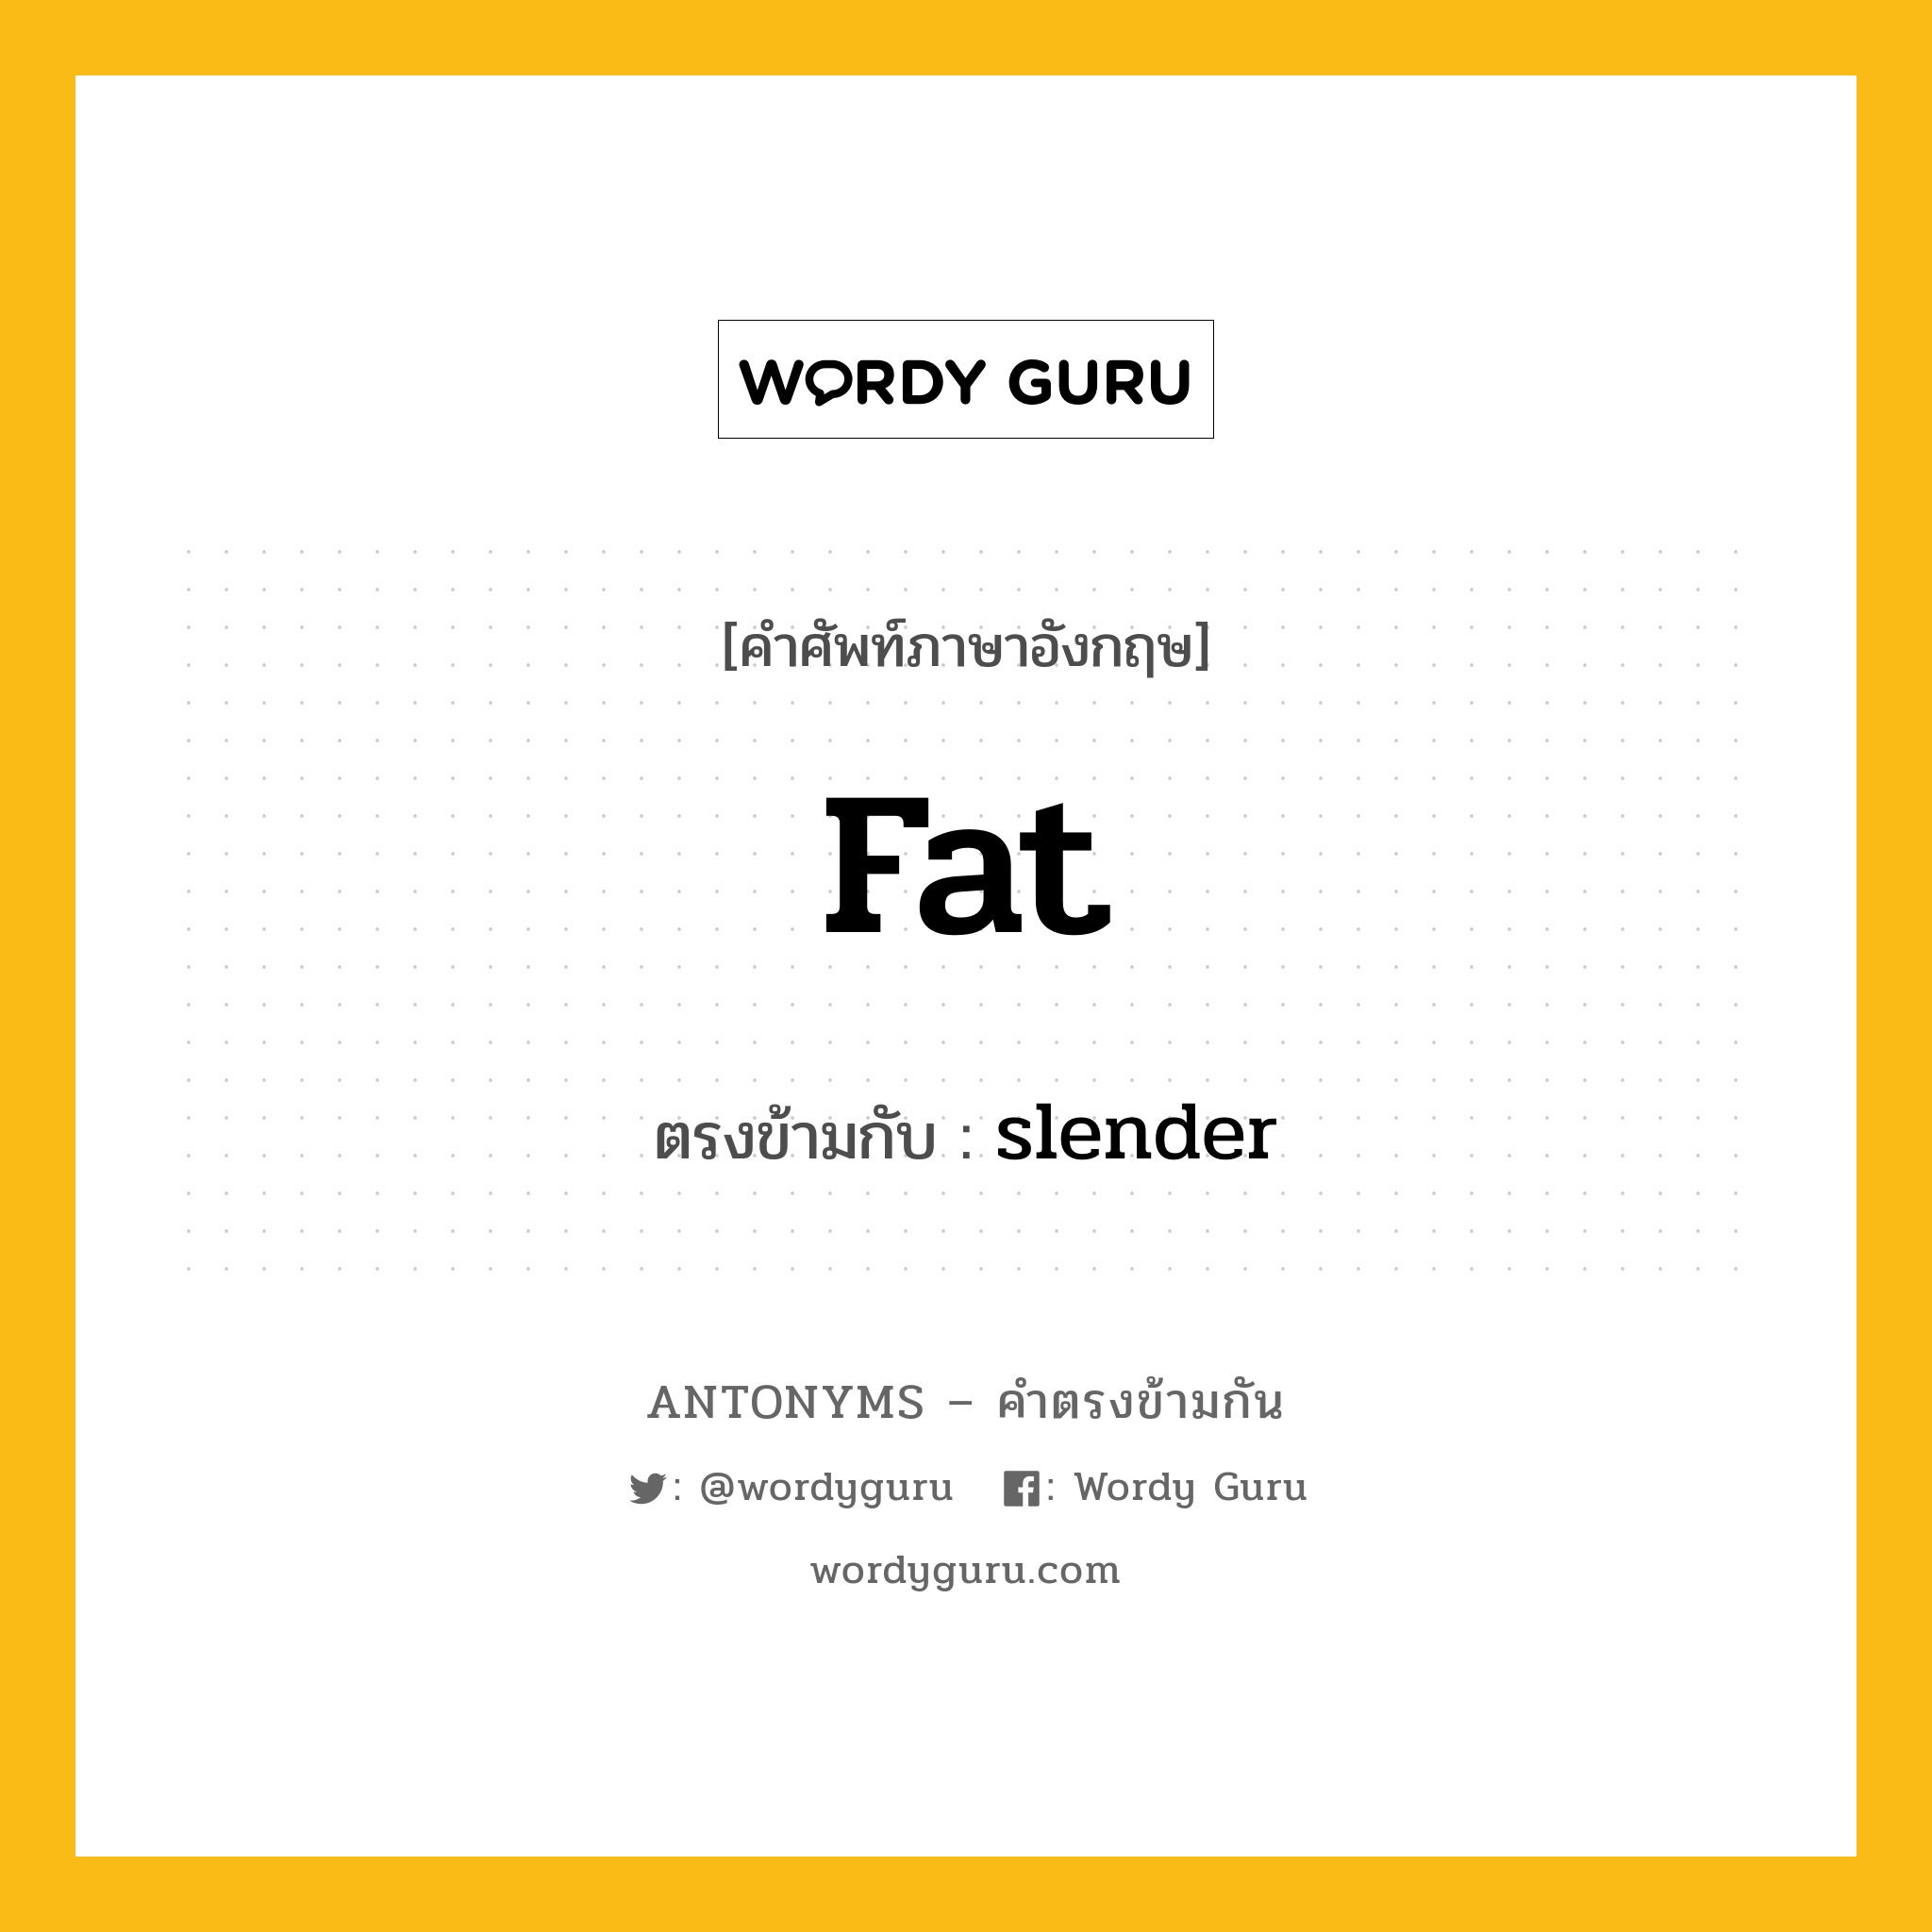 fat เป็นคำตรงข้ามกับคำไหนบ้าง?, คำศัพท์ภาษาอังกฤษ fat ตรงข้ามกับ slender หมวด slender